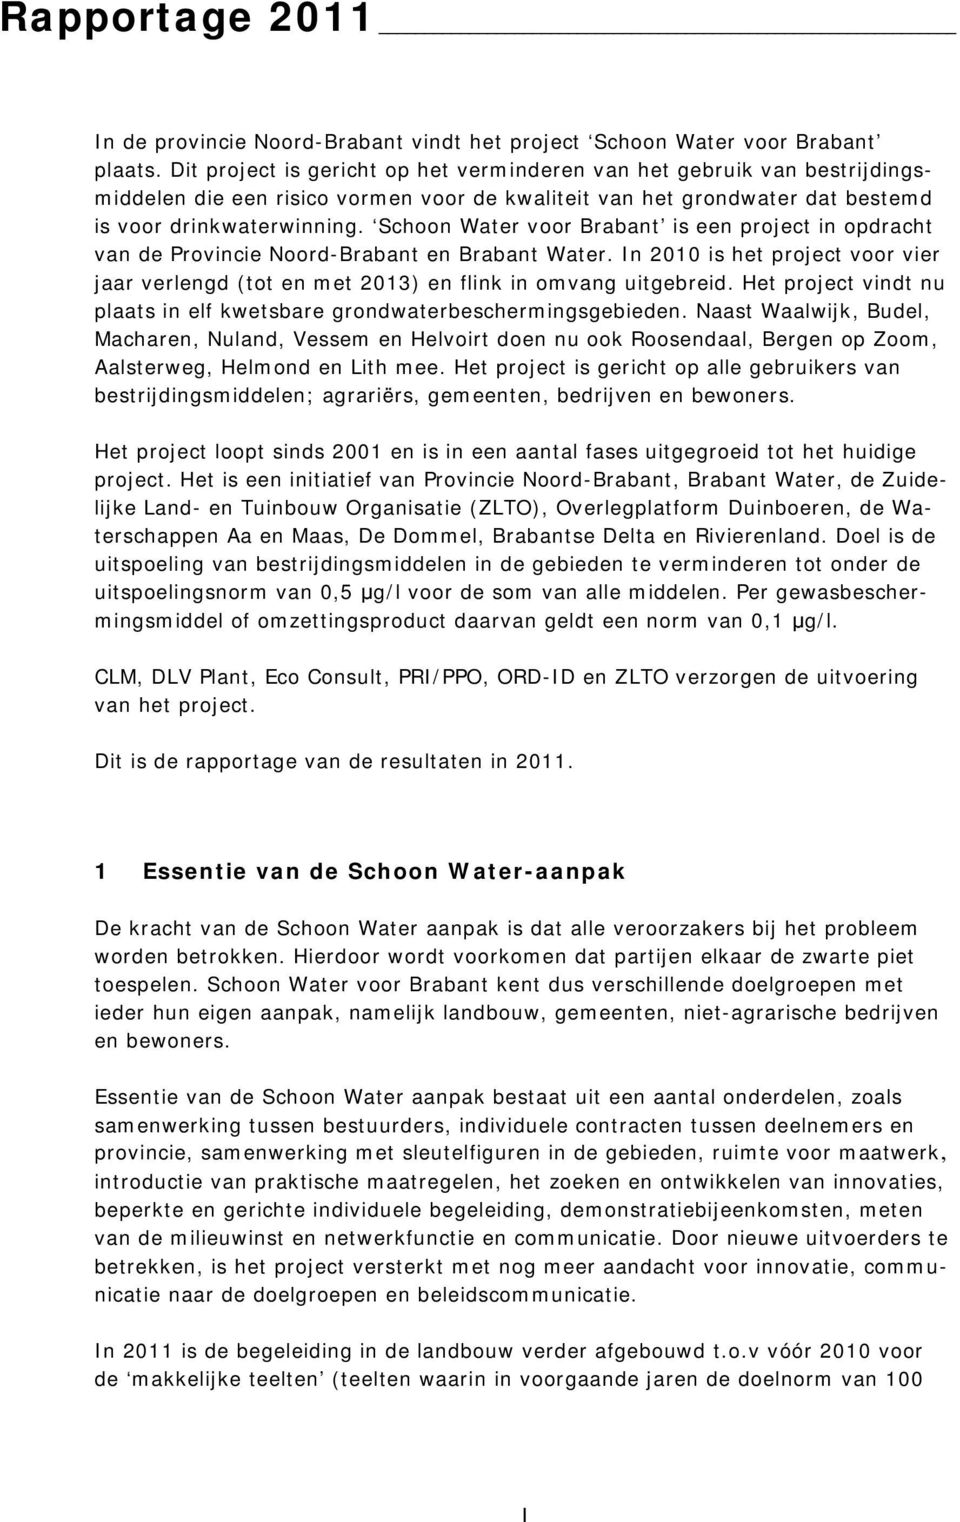 Schoon Water voor Brabant is een project in opdracht van de Provincie Noord-Brabant en Brabant Water. In 2010 is het project voor vier jaar verlengd (tot en met 2013) en flink in omvang uitgebreid.